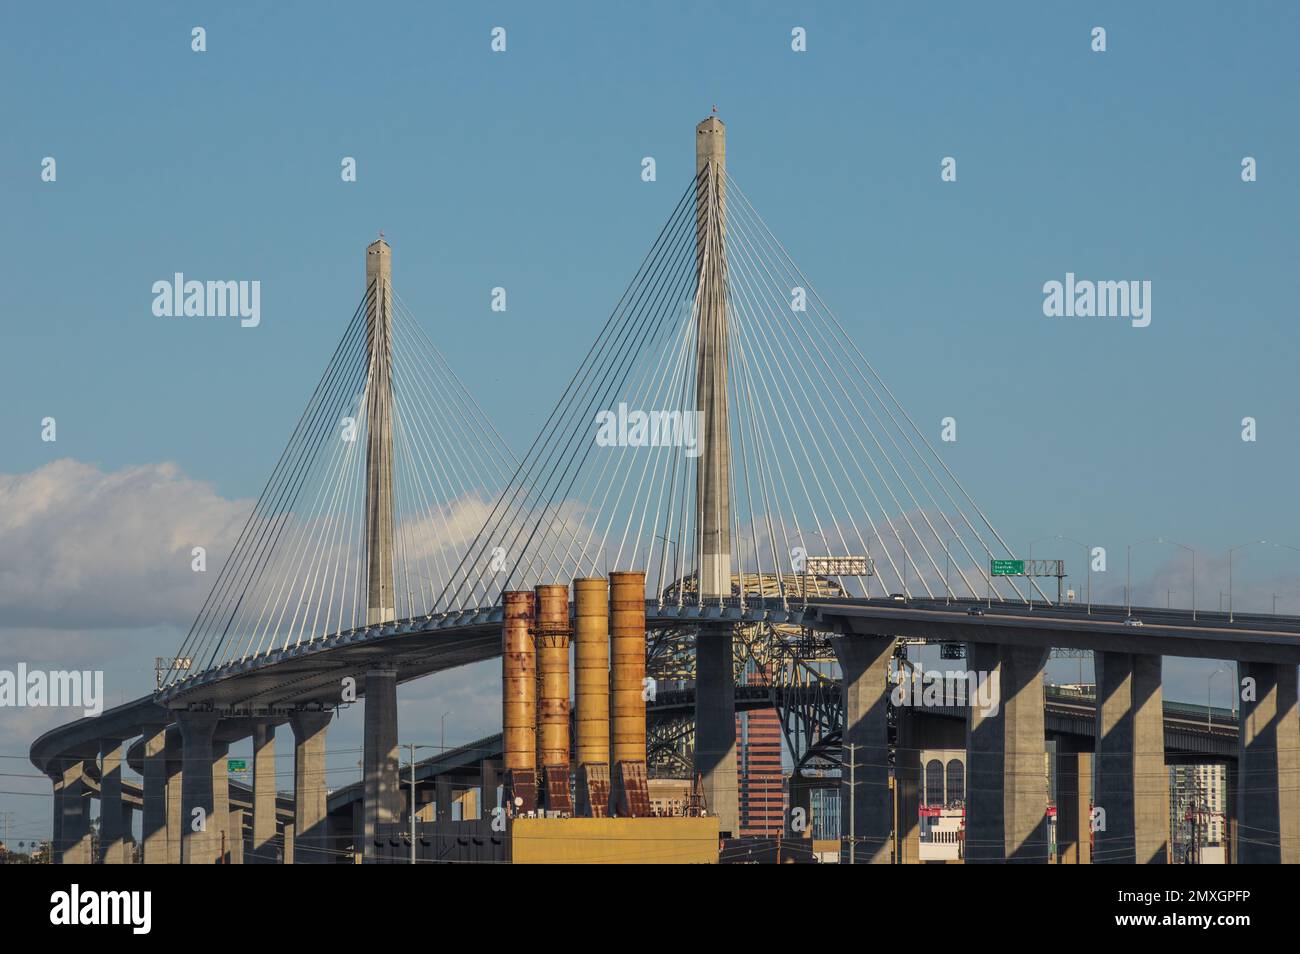 Le pont Gerald Desmond de long Beach, Californie, est exposé par une journée ensoleillée. Banque D'Images